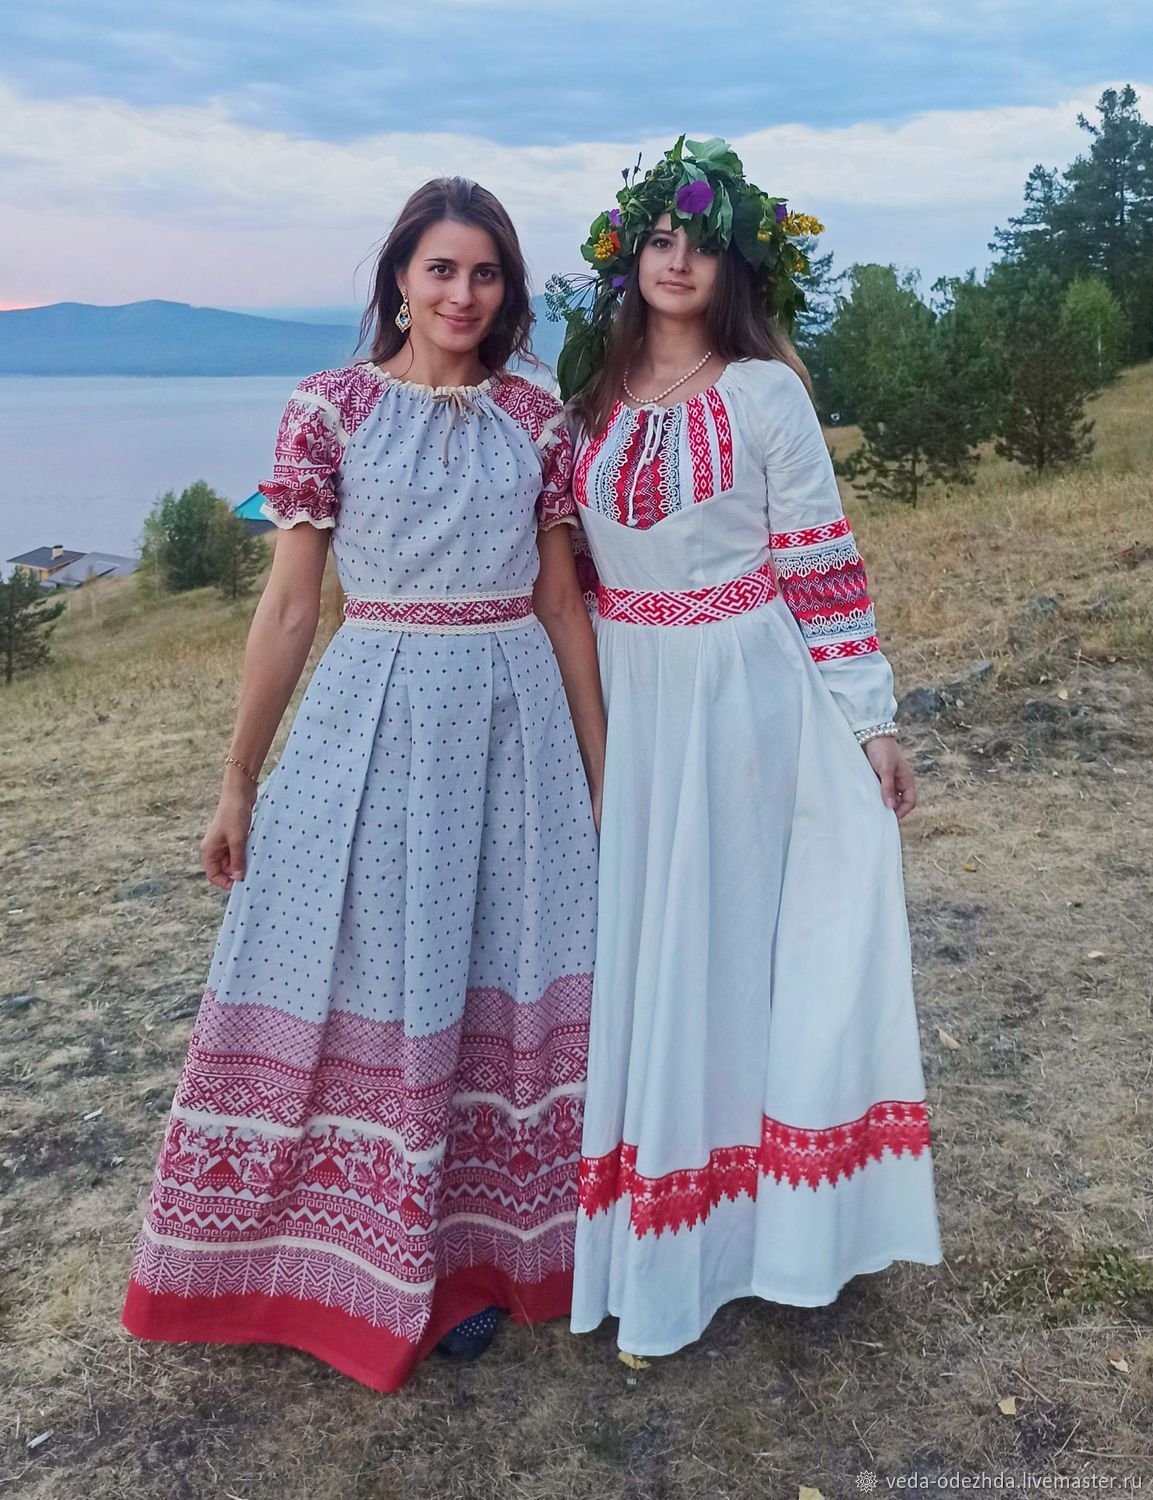 Русское народное платье